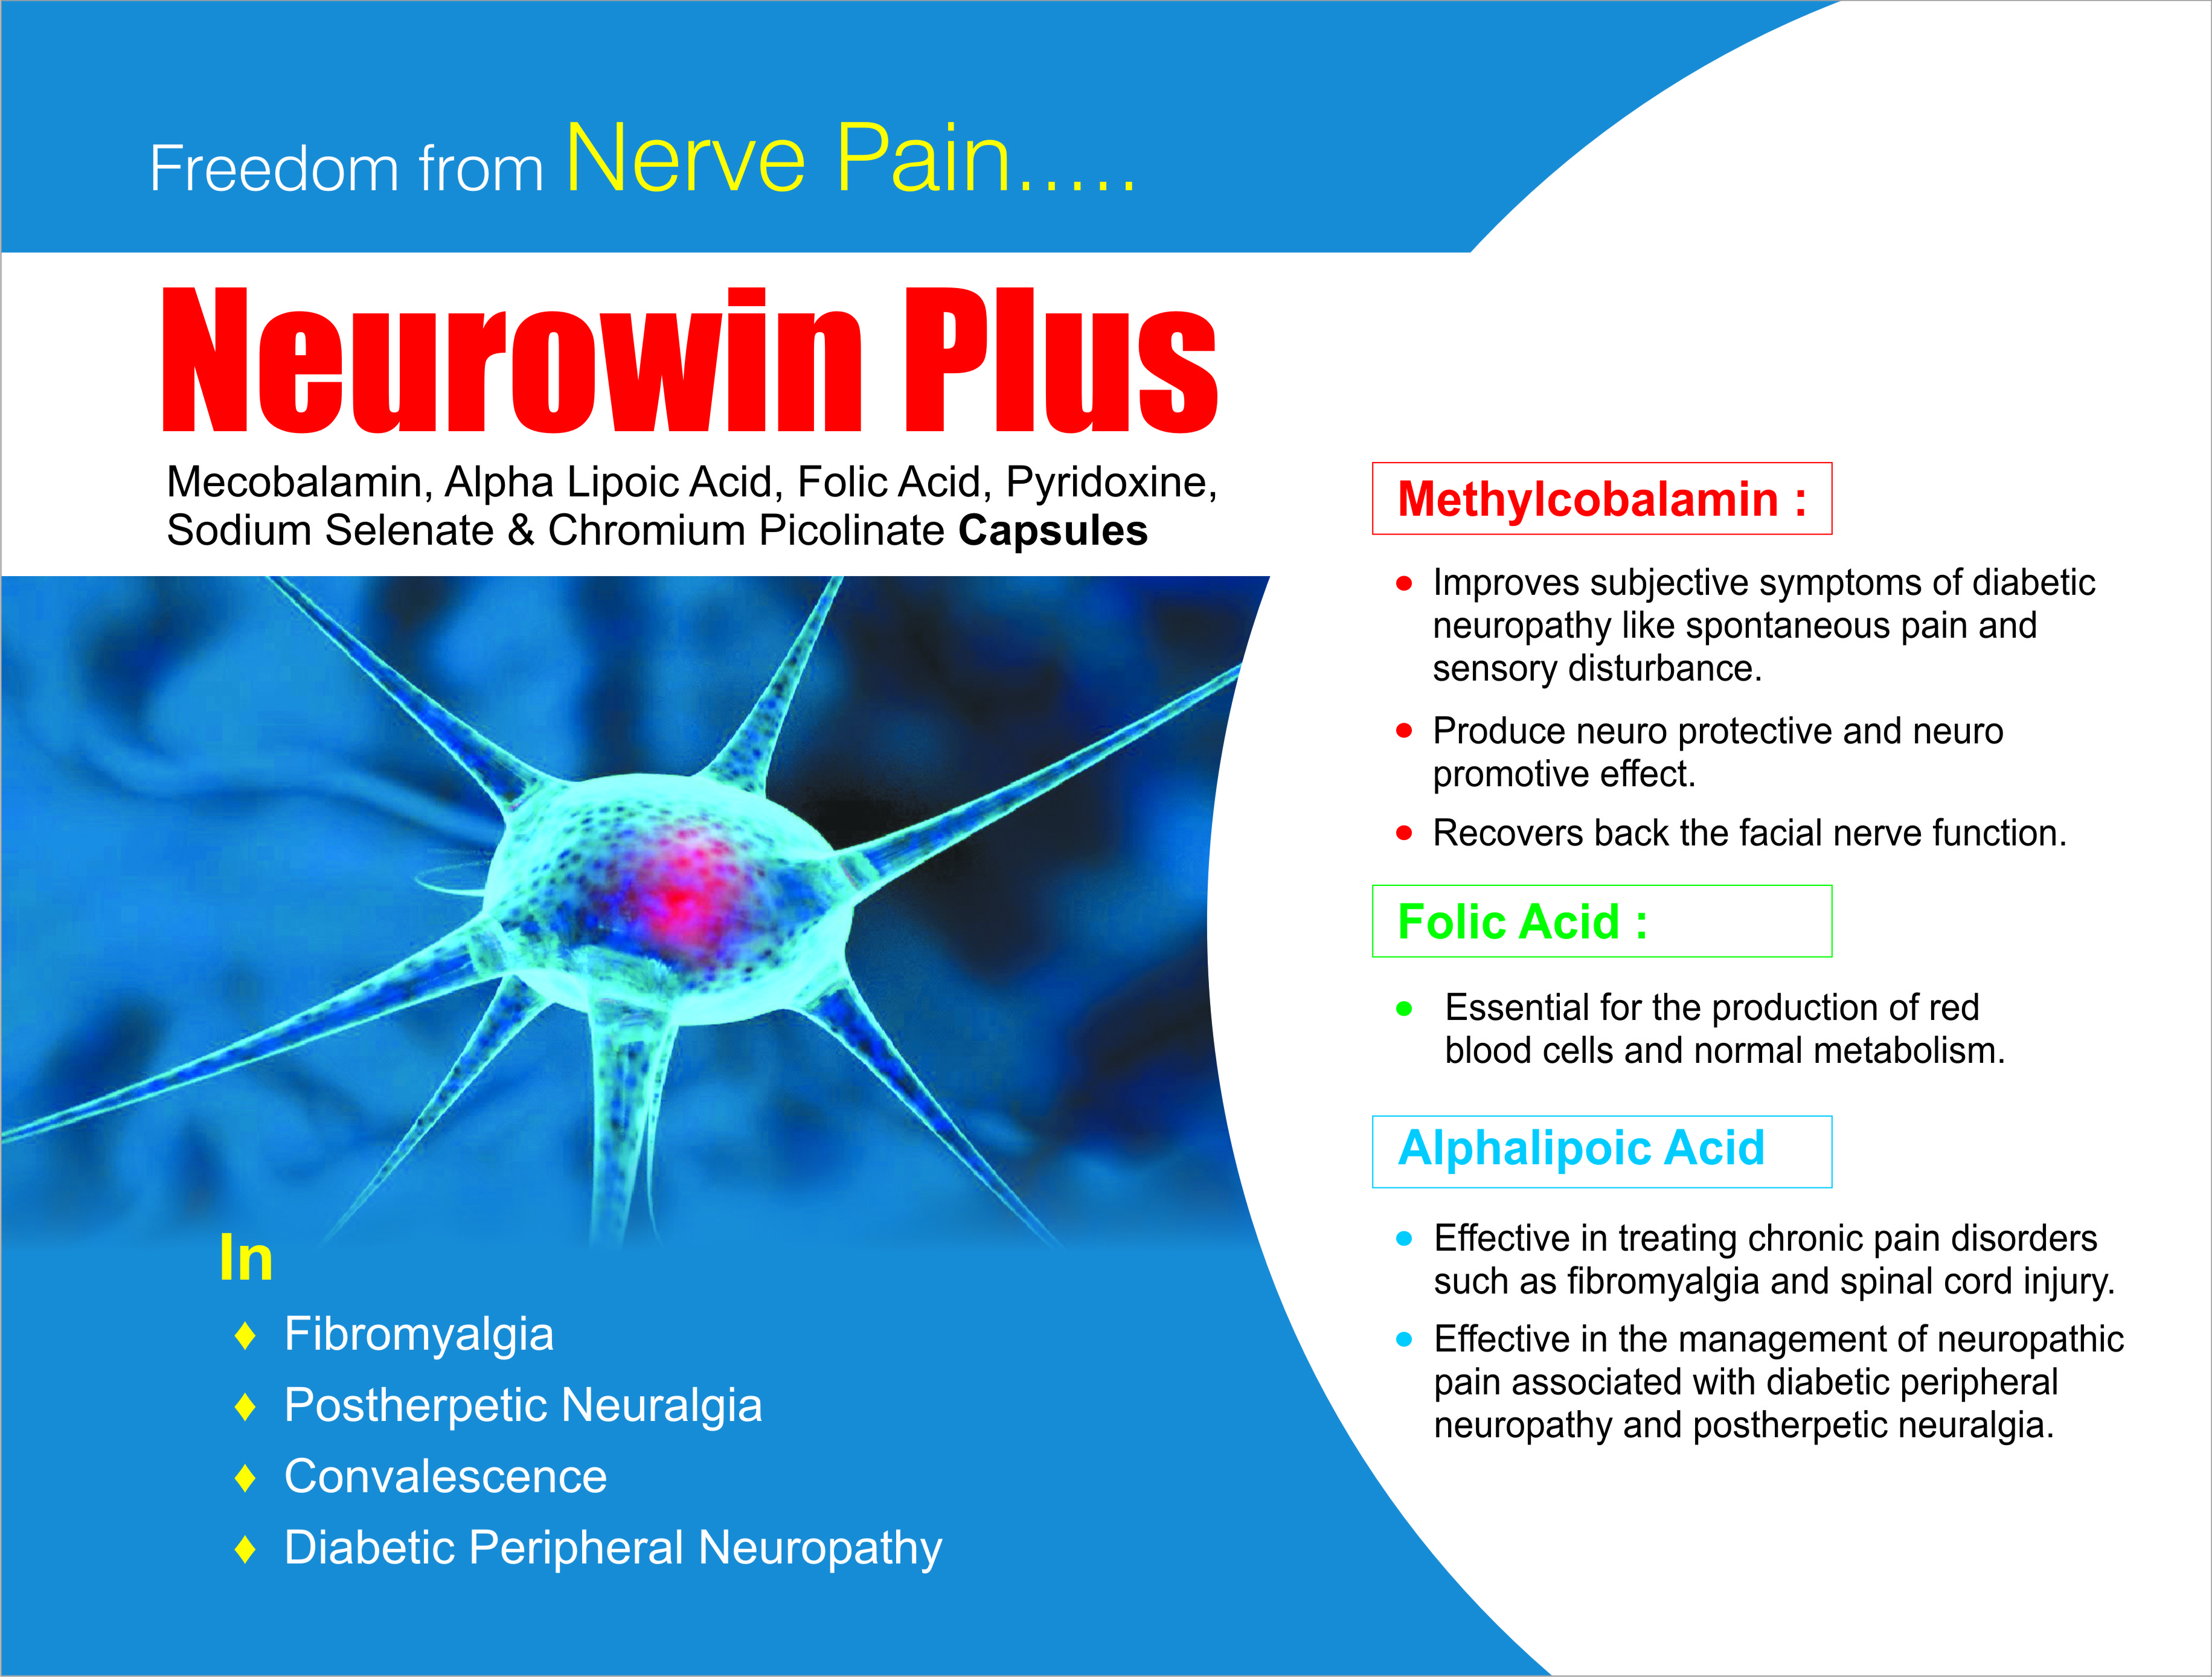 Neurowin Plus